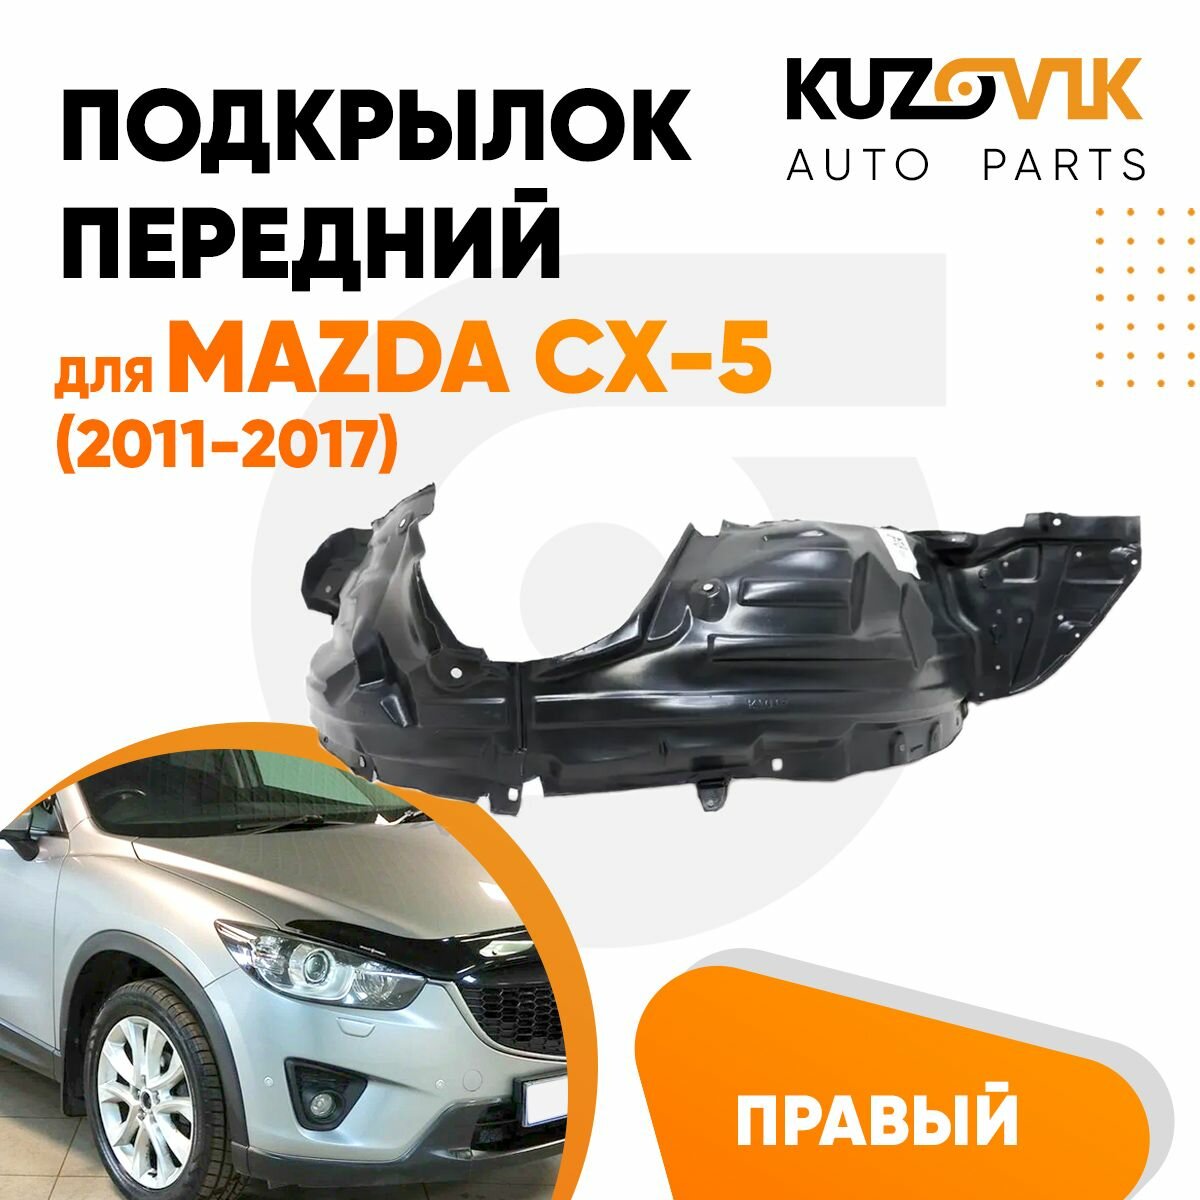 Подкрылки передние Mazda CX-5 (2011-2017) 2 шт комплект левый + правый